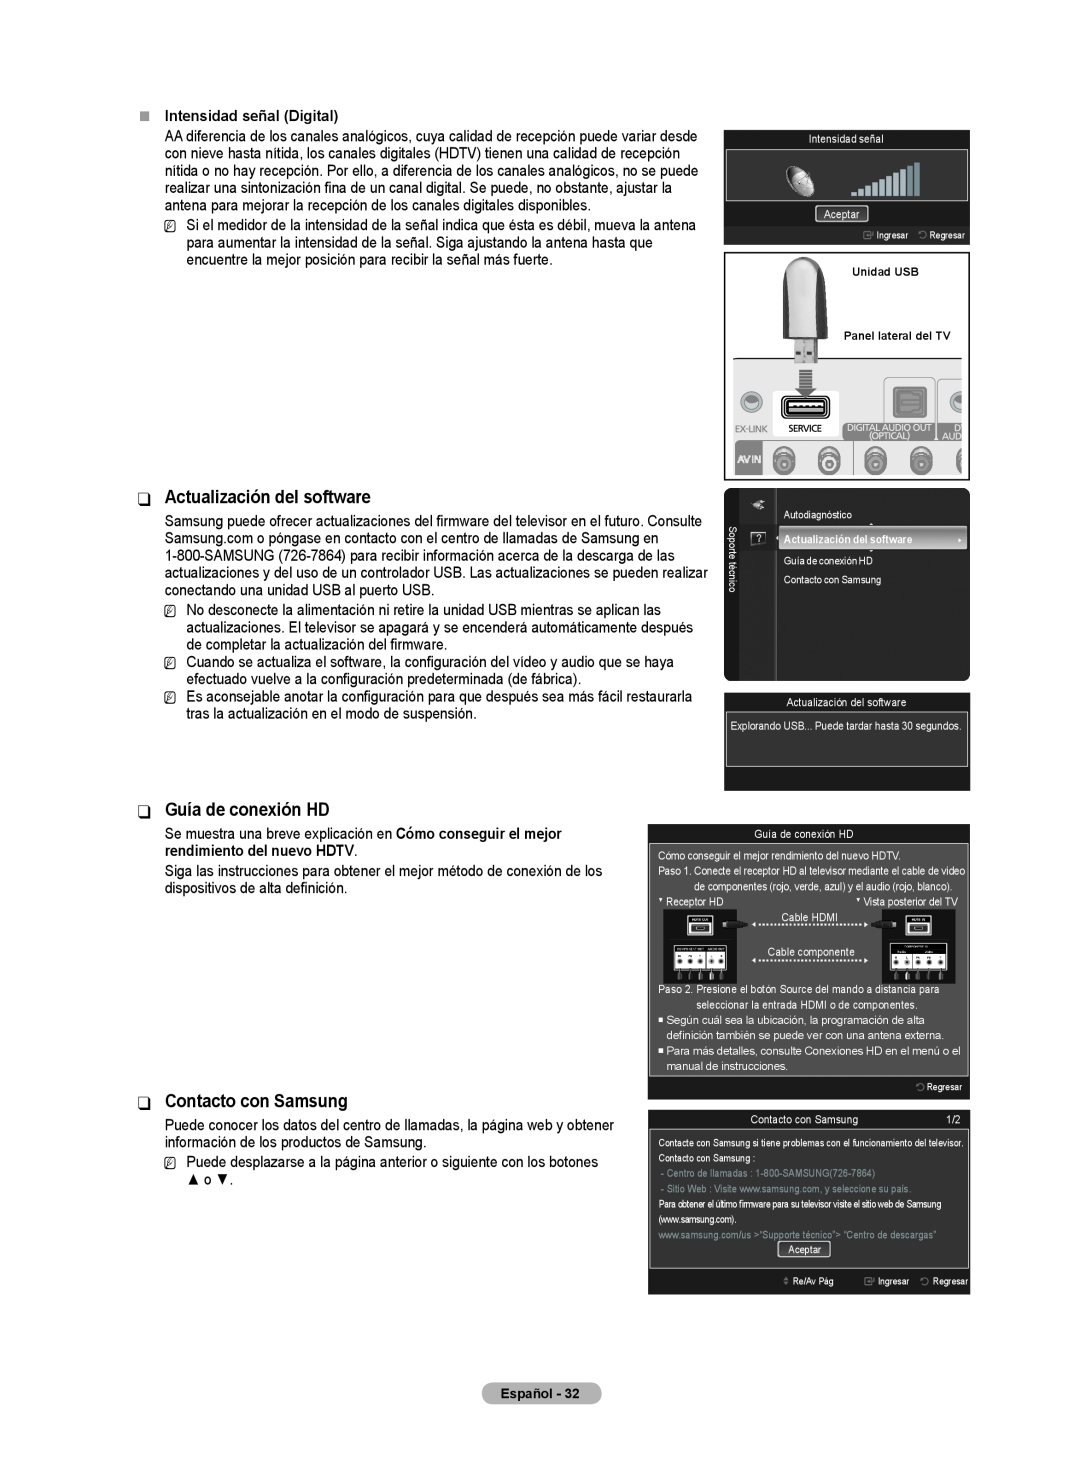 Samsung BN68-02426A-00 Actualización del software, Guía de conexión HD, Contacto con Samsung, „„ Intensidad señal Digital 